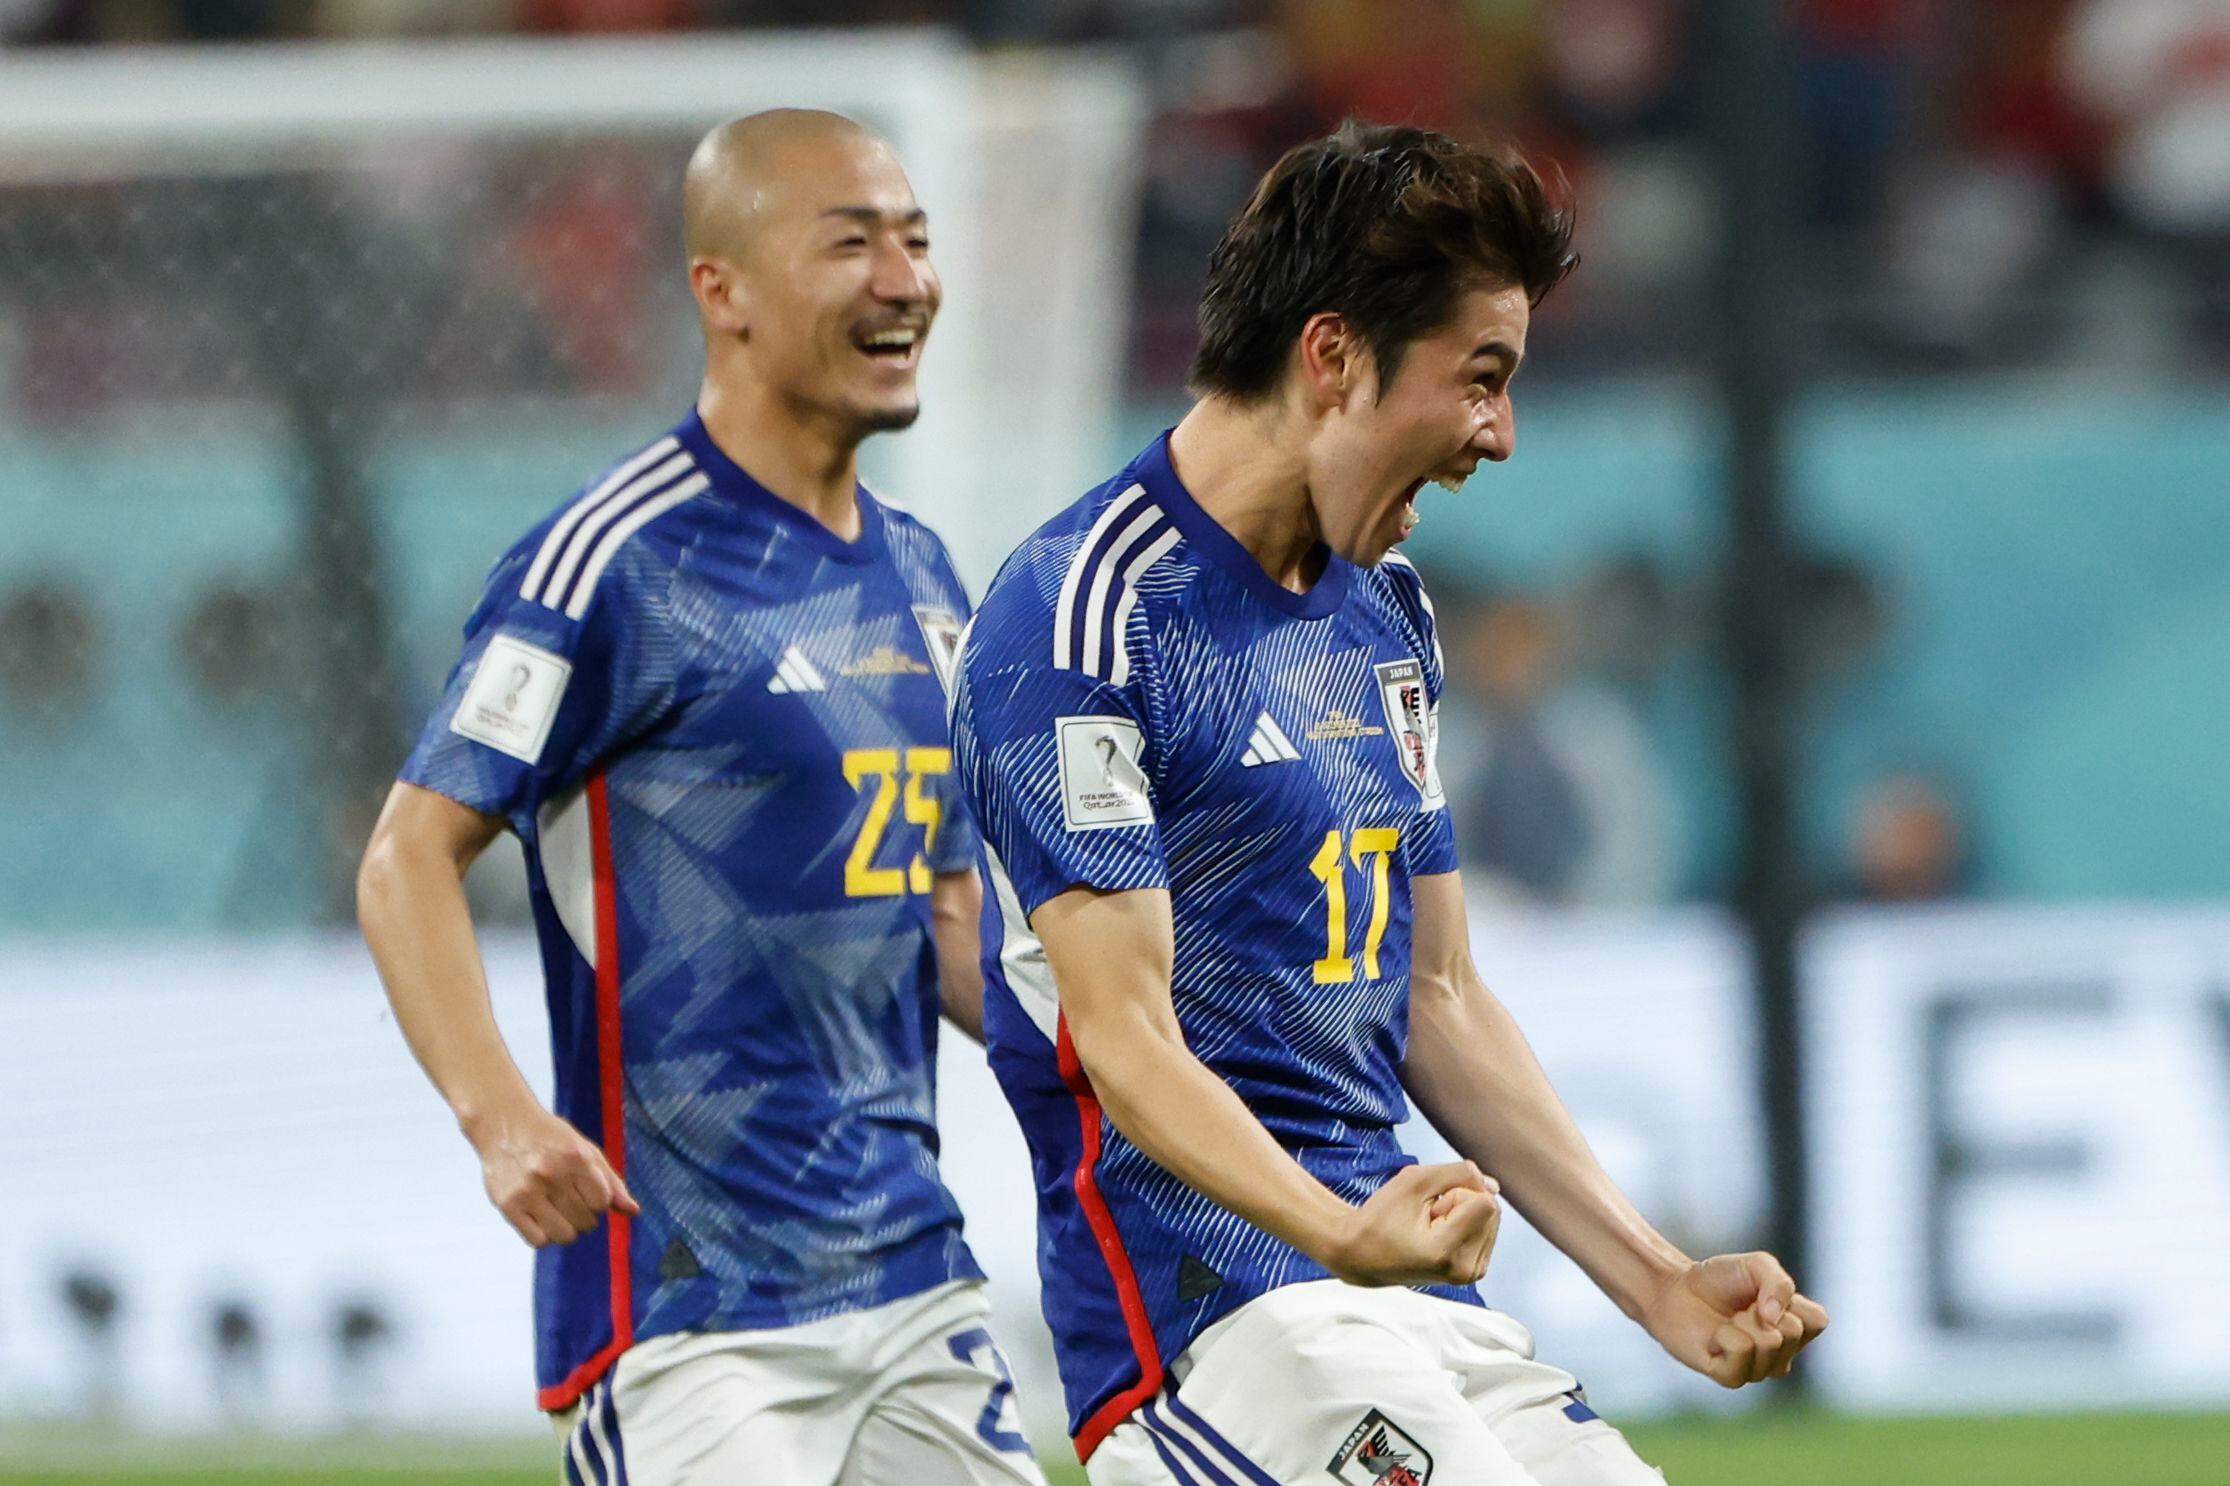 GR4015. DOHA (CATAR), 01/12/2022.- Ao Tanaka (c) de Japón celebra un gol hoy, en un partido de la fase de grupos del Mundial de Fútbol Qatar 2022 entre Japón y España en el estadio Internacional Jalifa en Doha (Catar). EFE/JuanJo Martín
